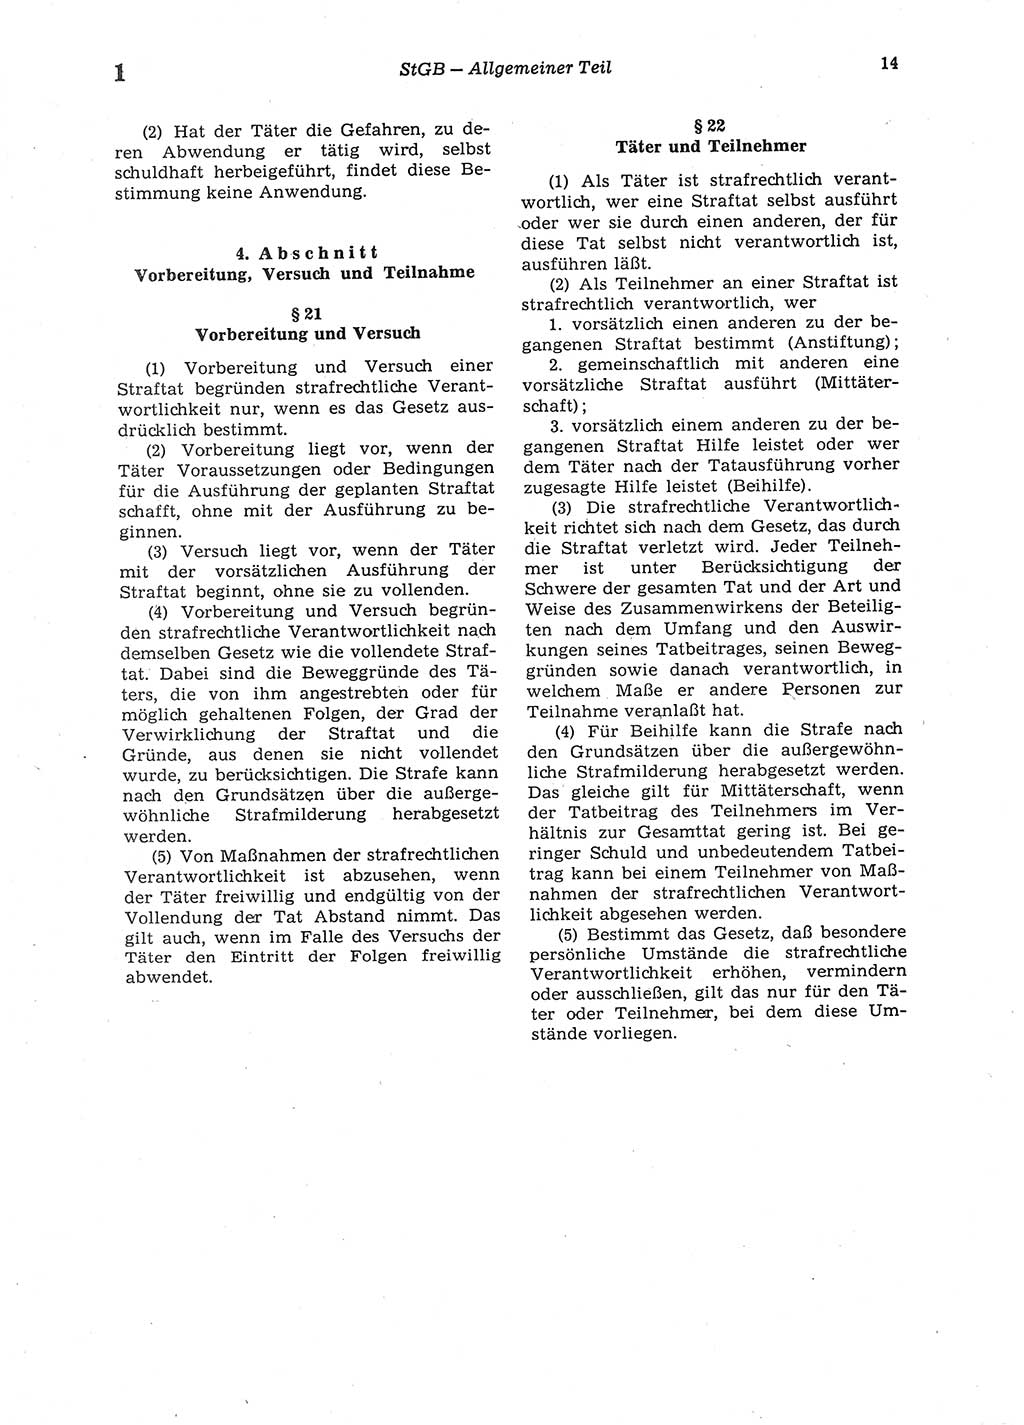 Strafgesetzbuch (StGB) der Deutschen Demokratischen Republik (DDR) 1987, Seite 14 (StGB DDR 1987, S. 14)